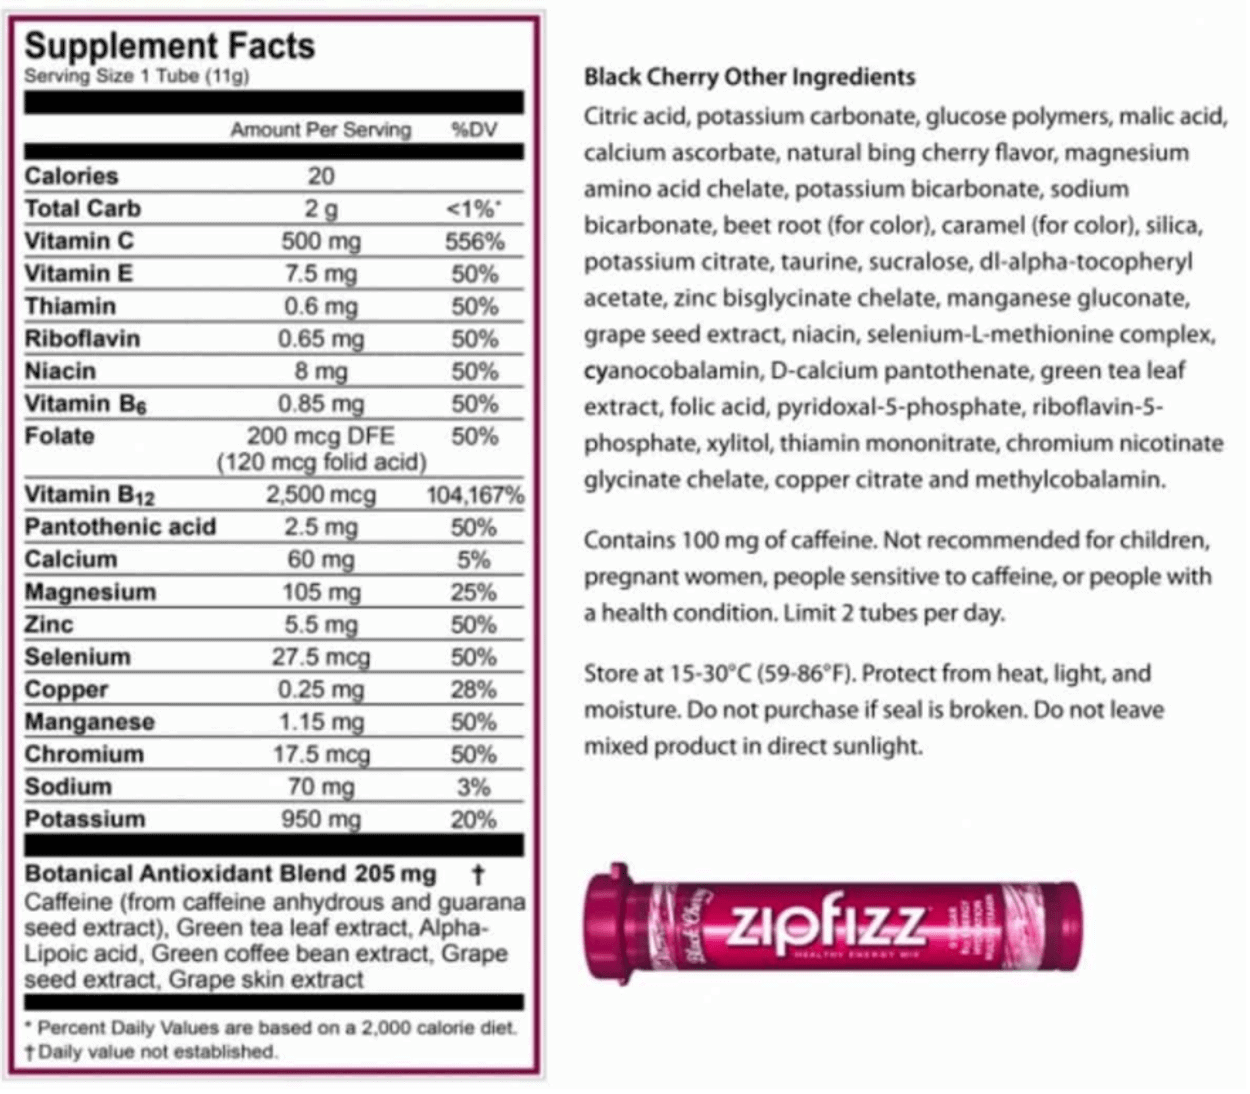 Supplement facts of Zipfizz. 